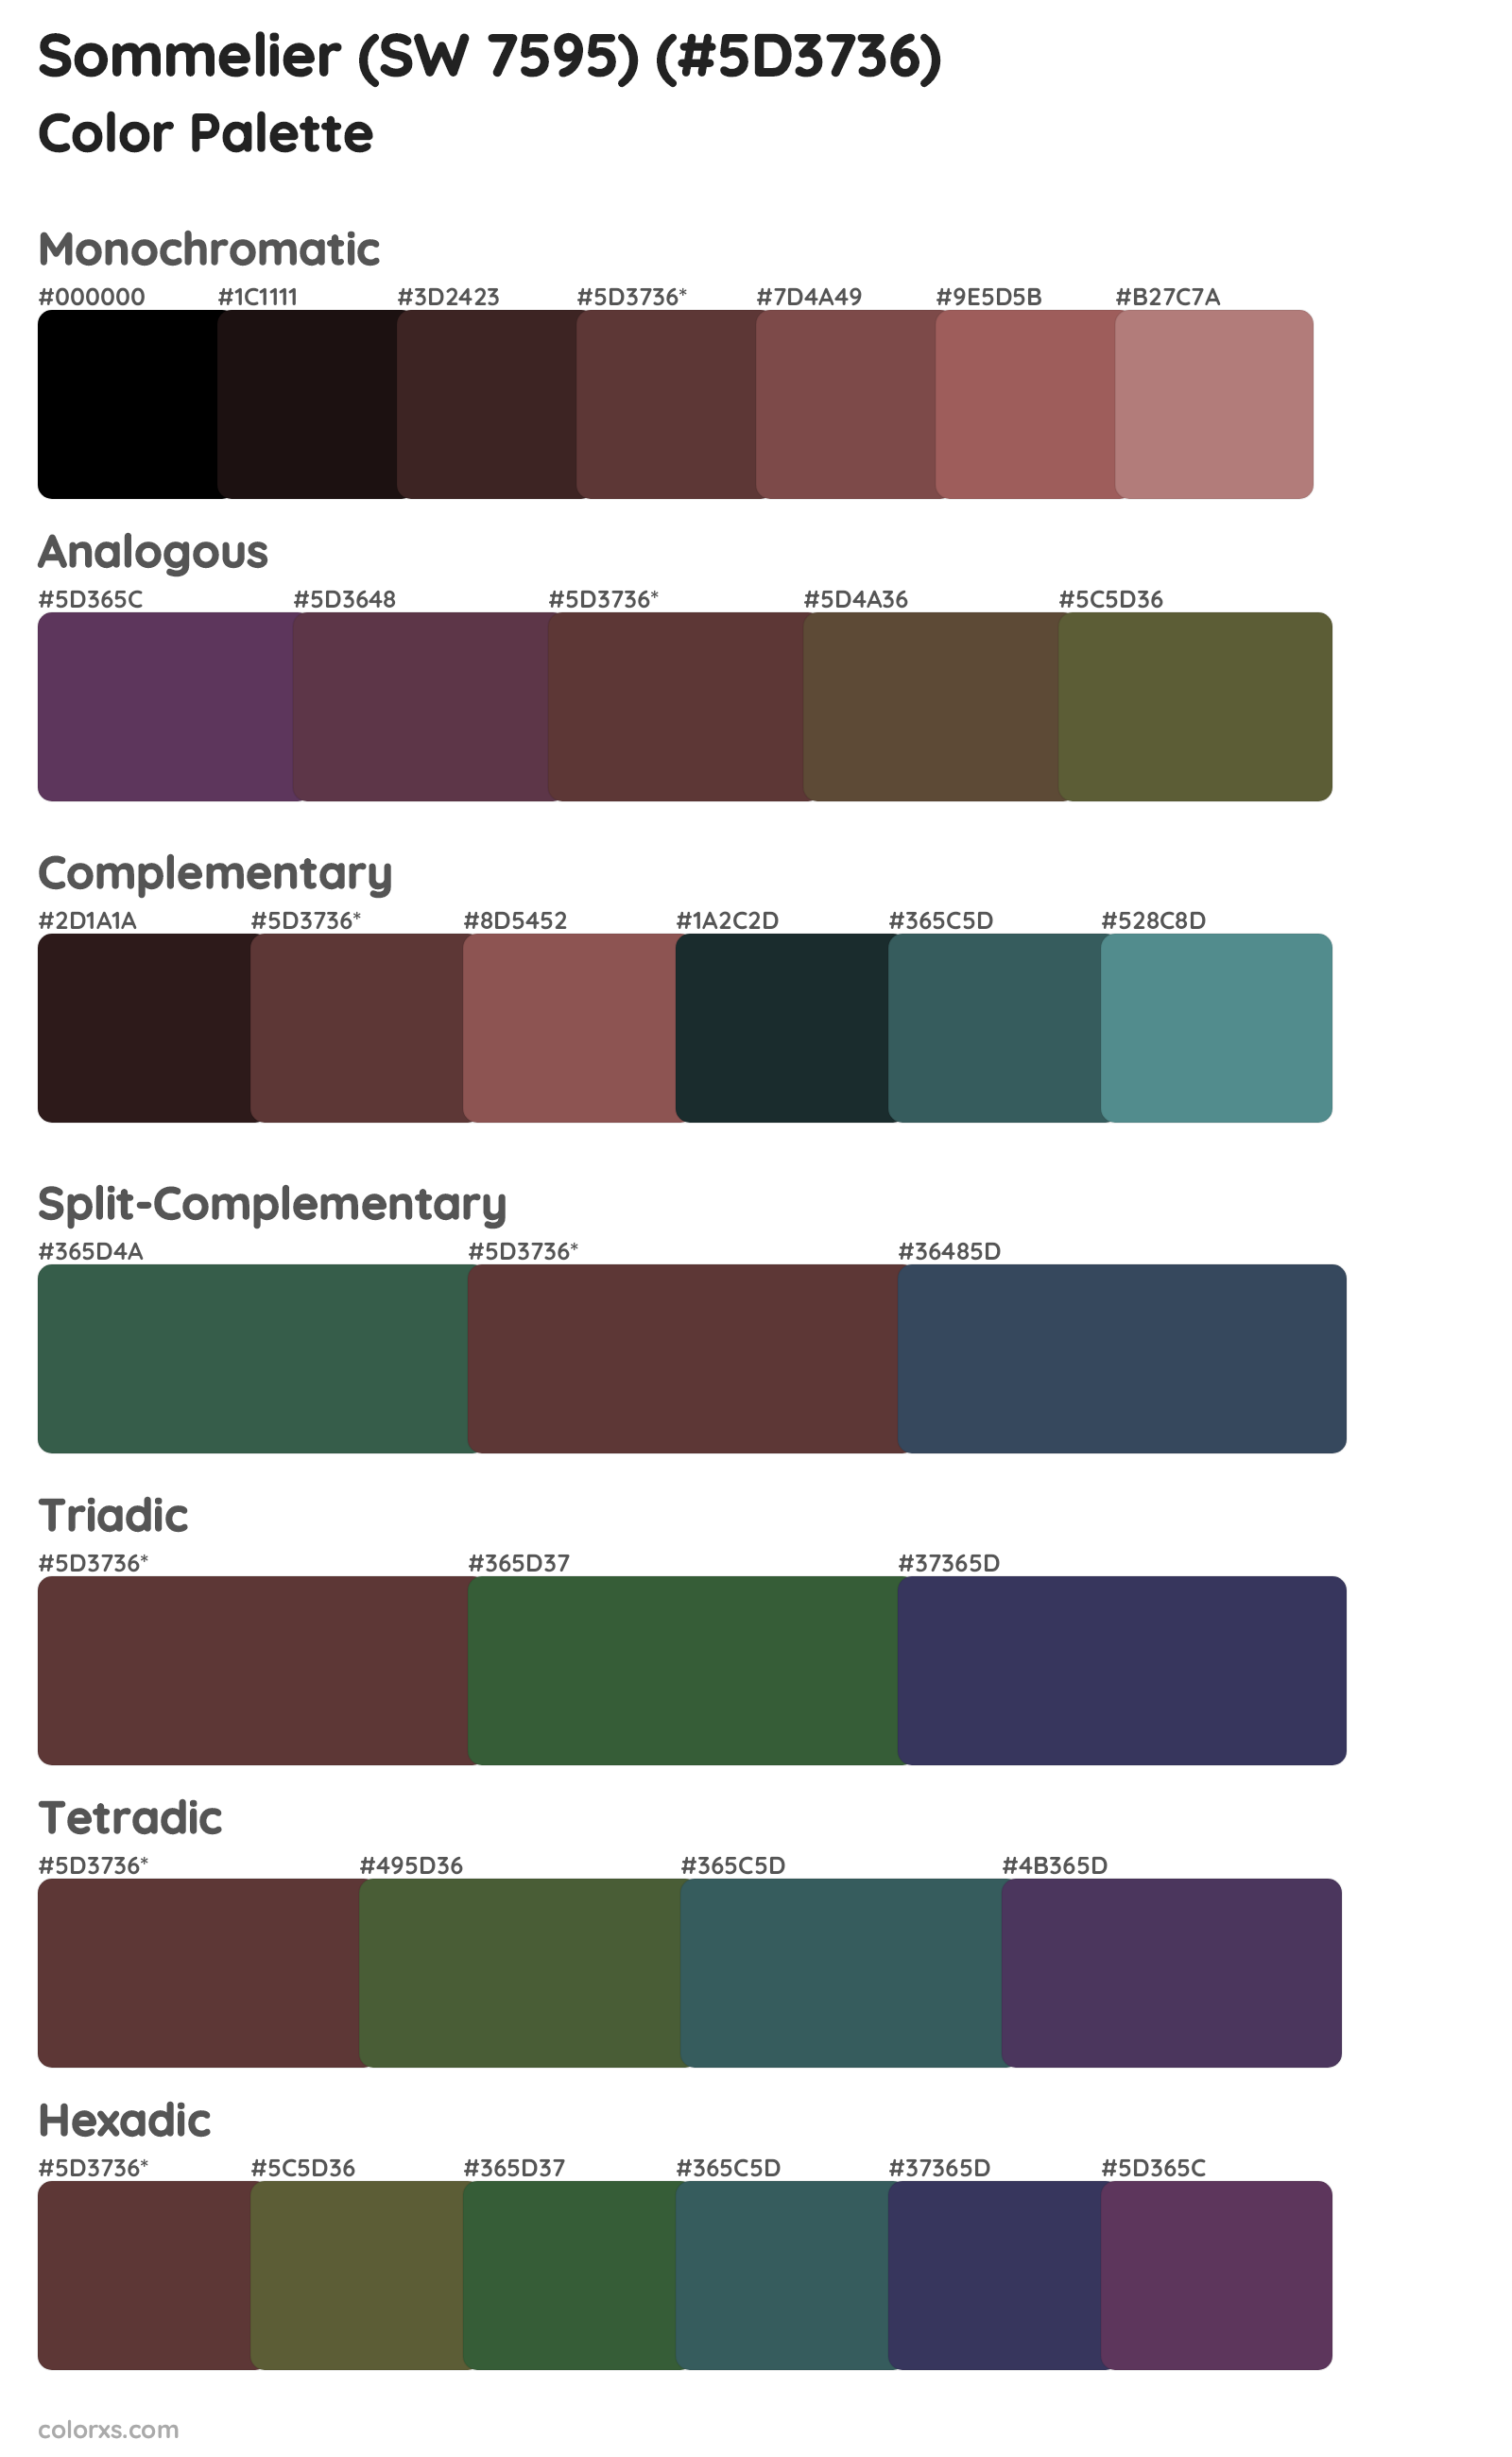 Sommelier (SW 7595) Color Scheme Palettes